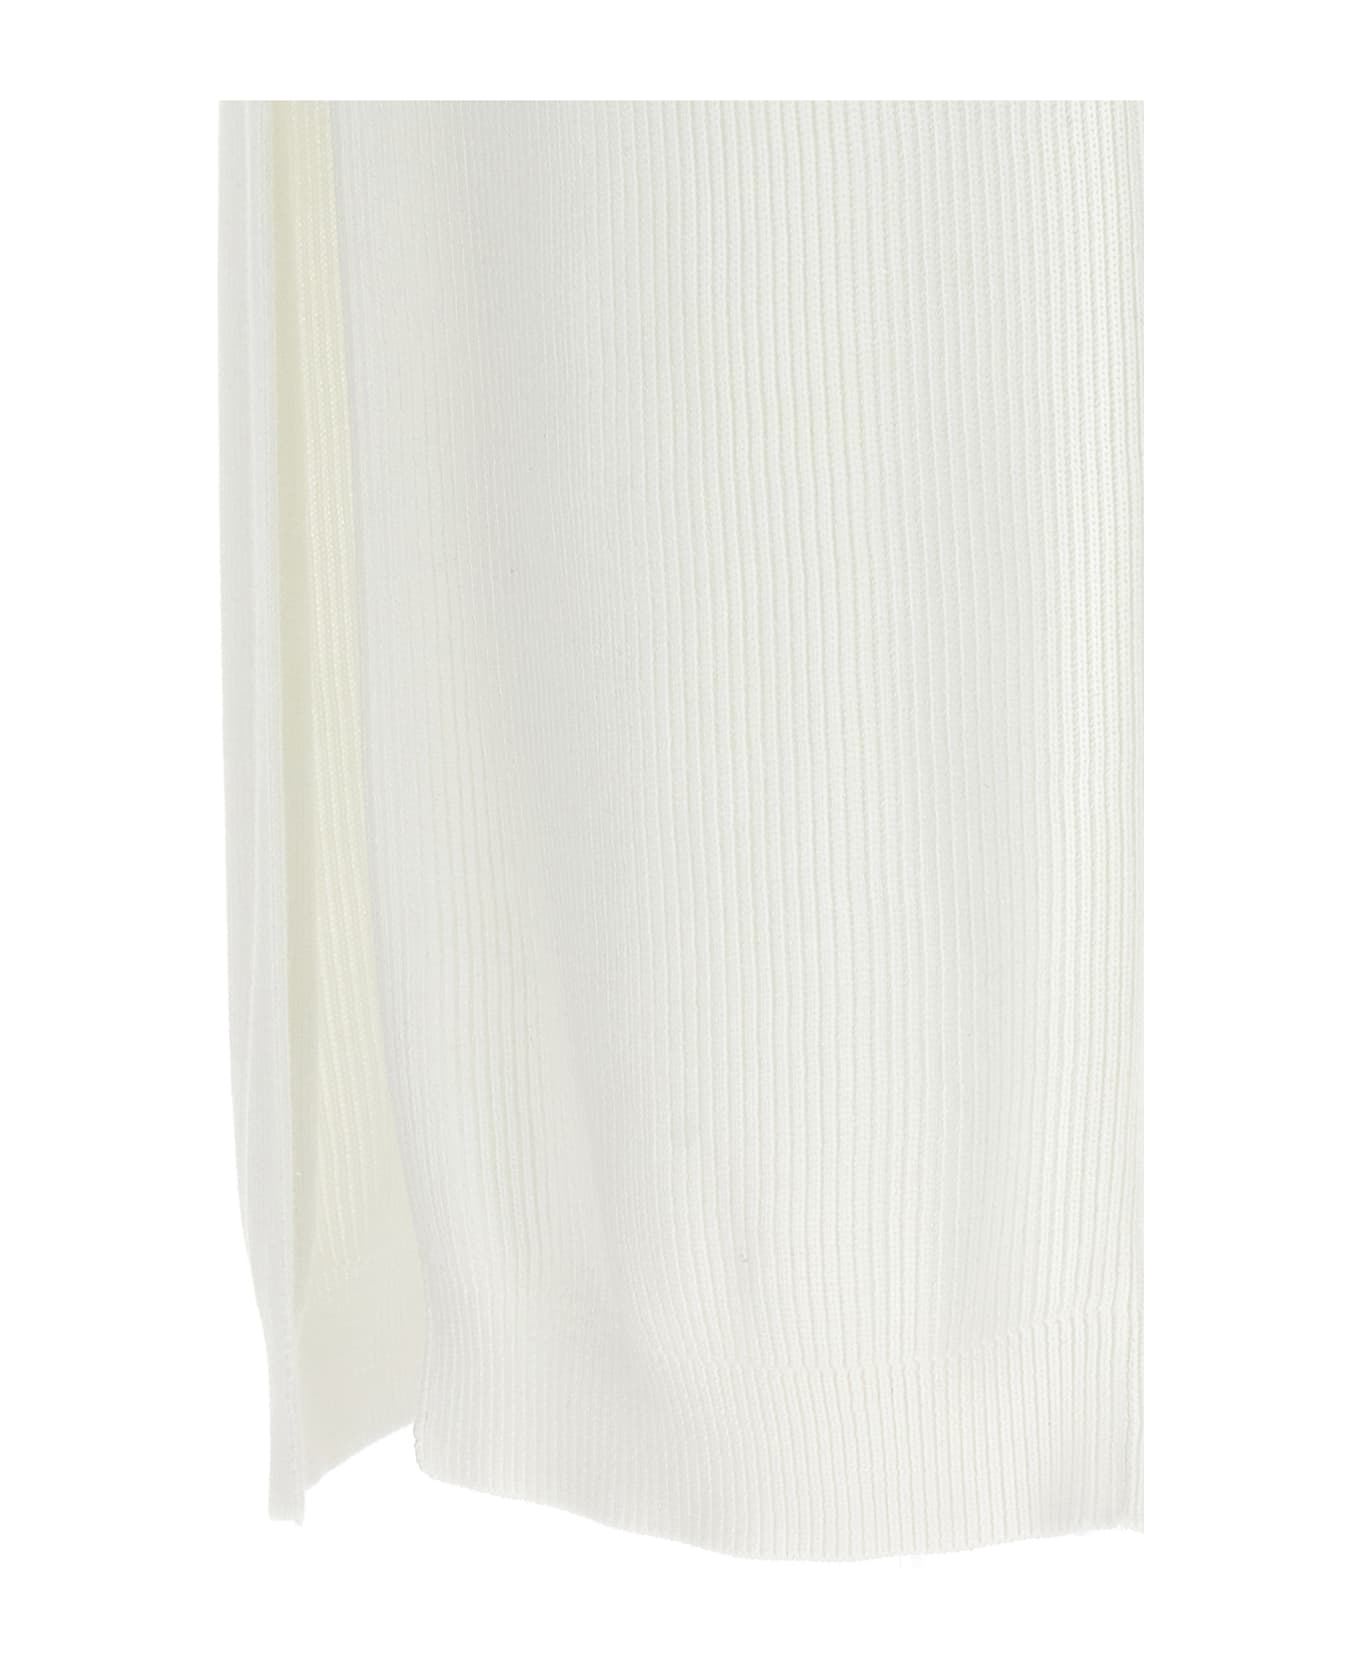 Brunello Cucinelli Knitted Skirt - White